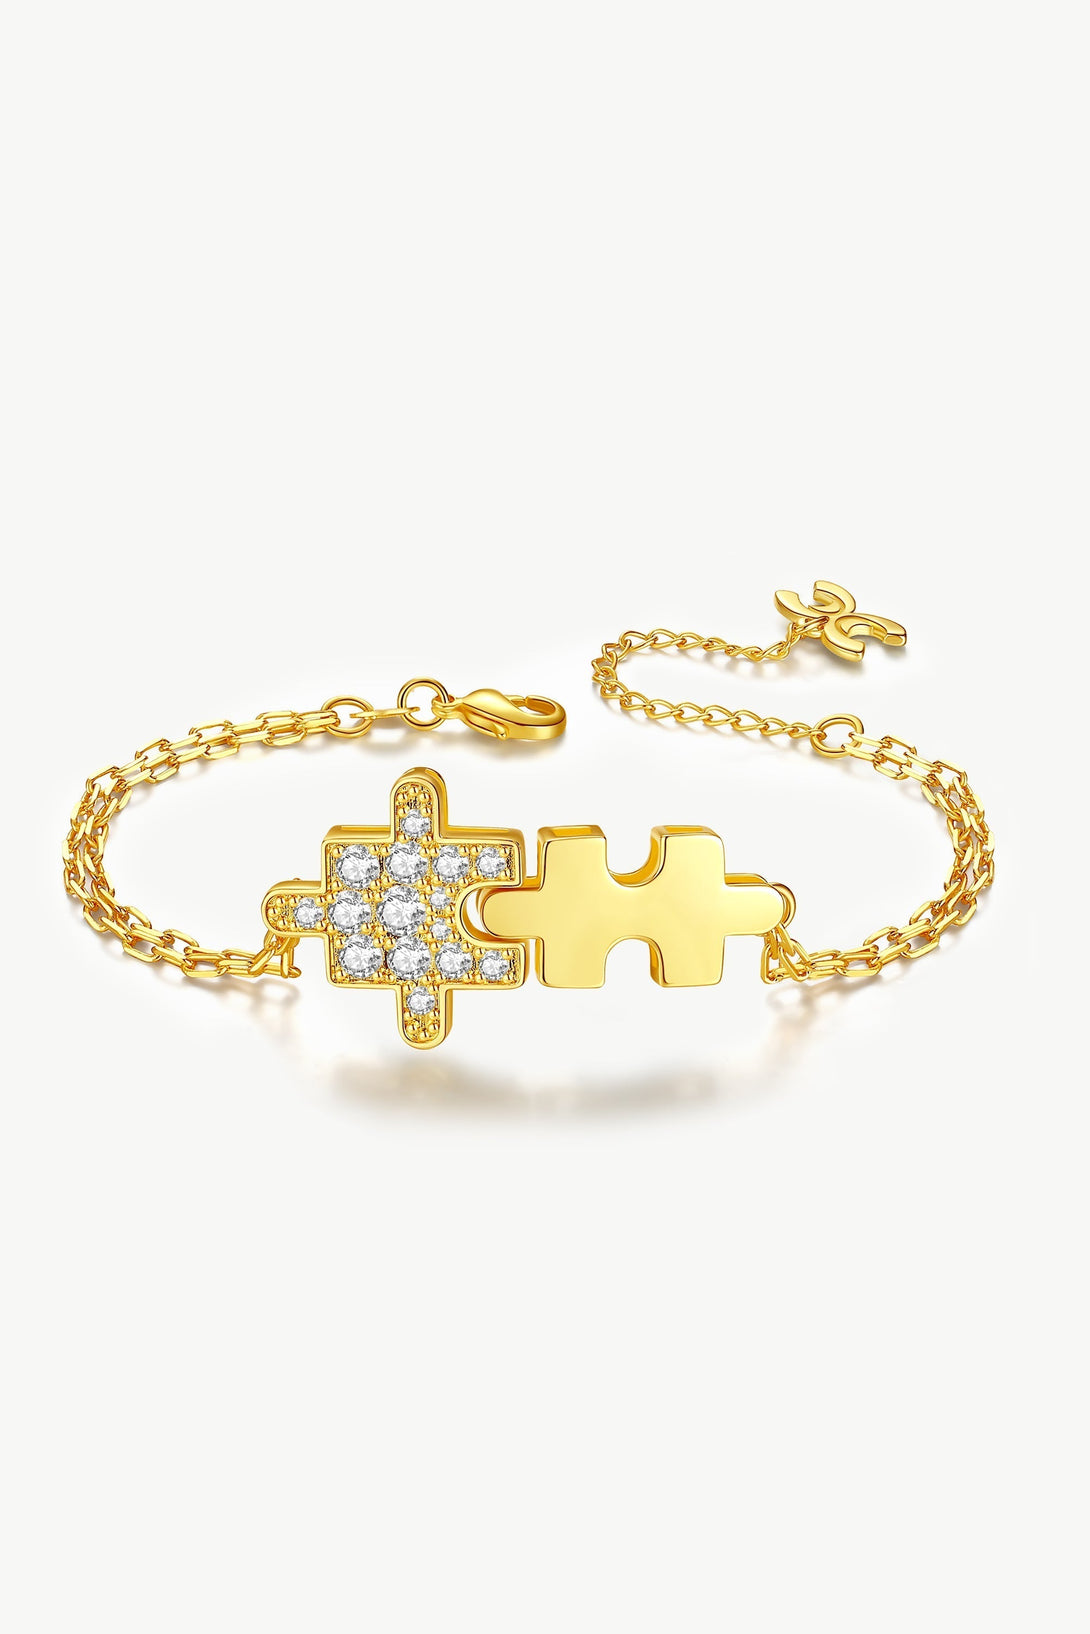 Gold Jigsaw Puzzle Zirconia Bracelet - Classicharms